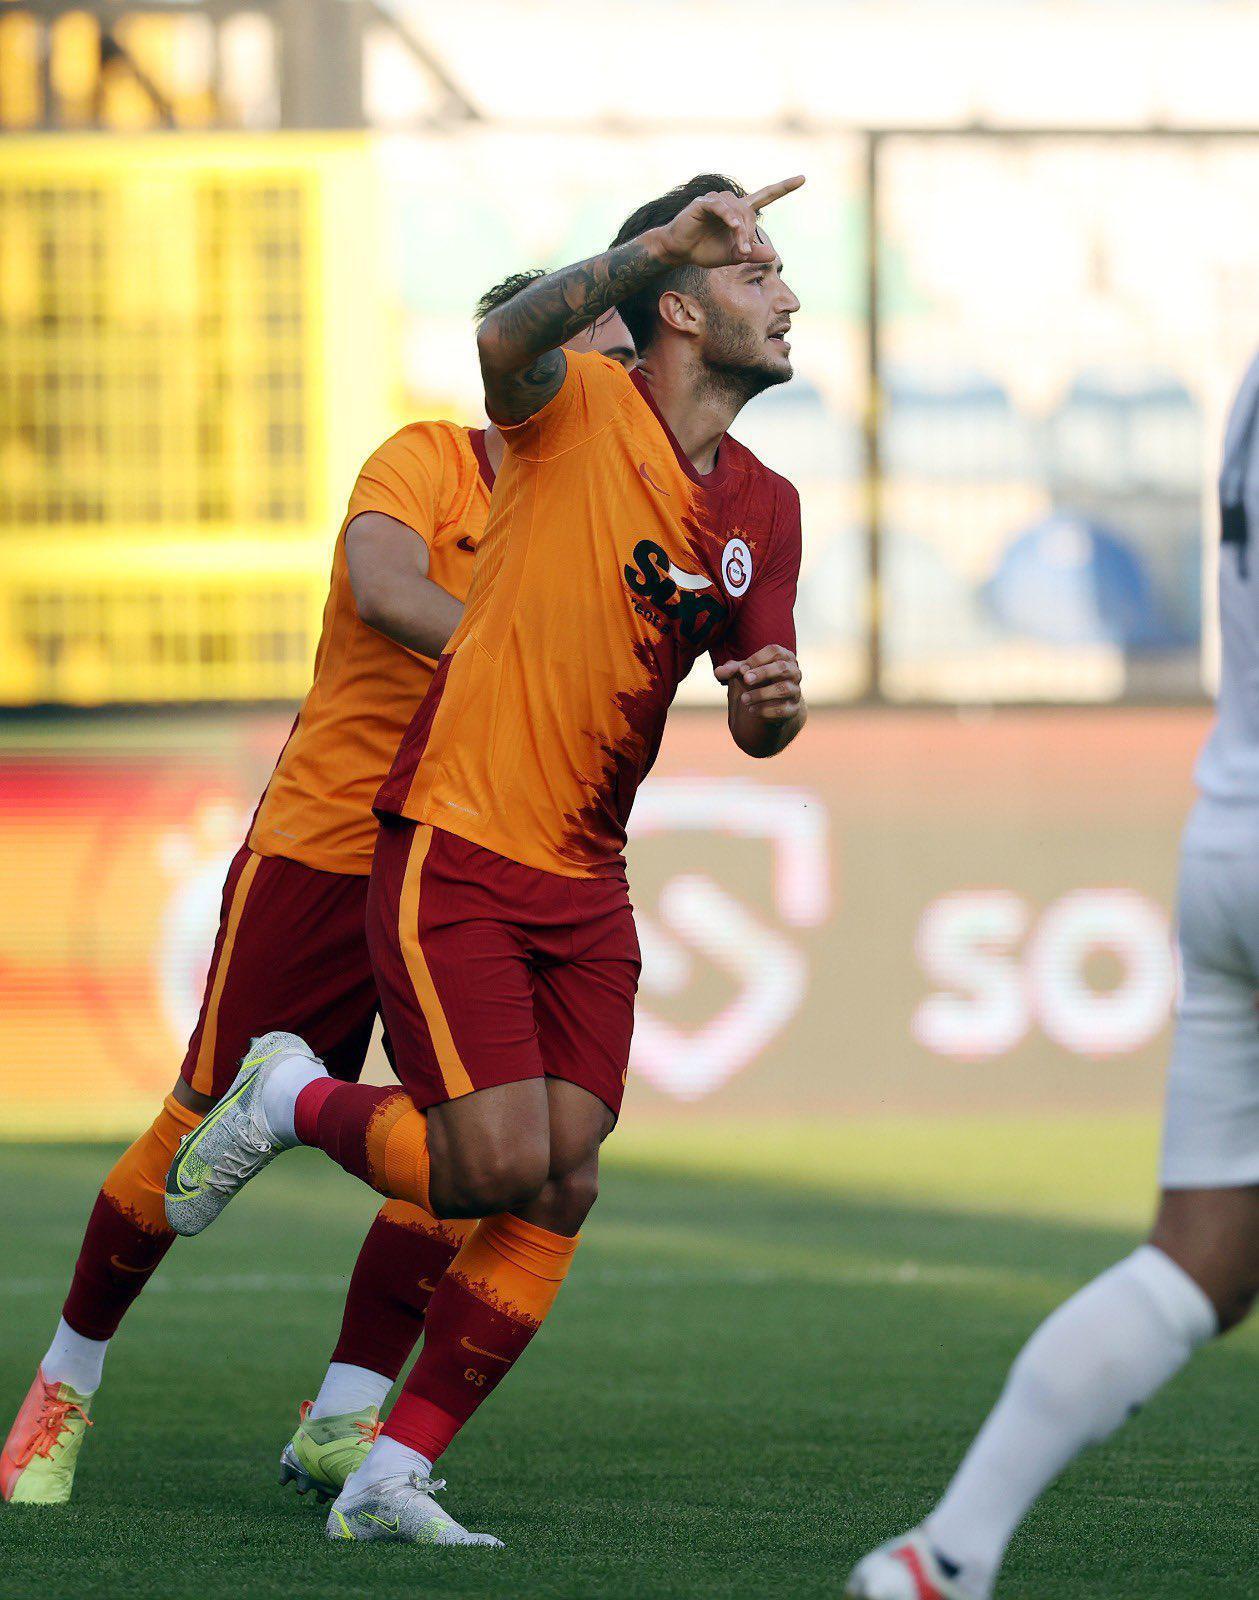 (ÖZET) Galatasaray - Kasımpaşa maç sonucu: 4-2 (Gs Kasımpaşa özet)